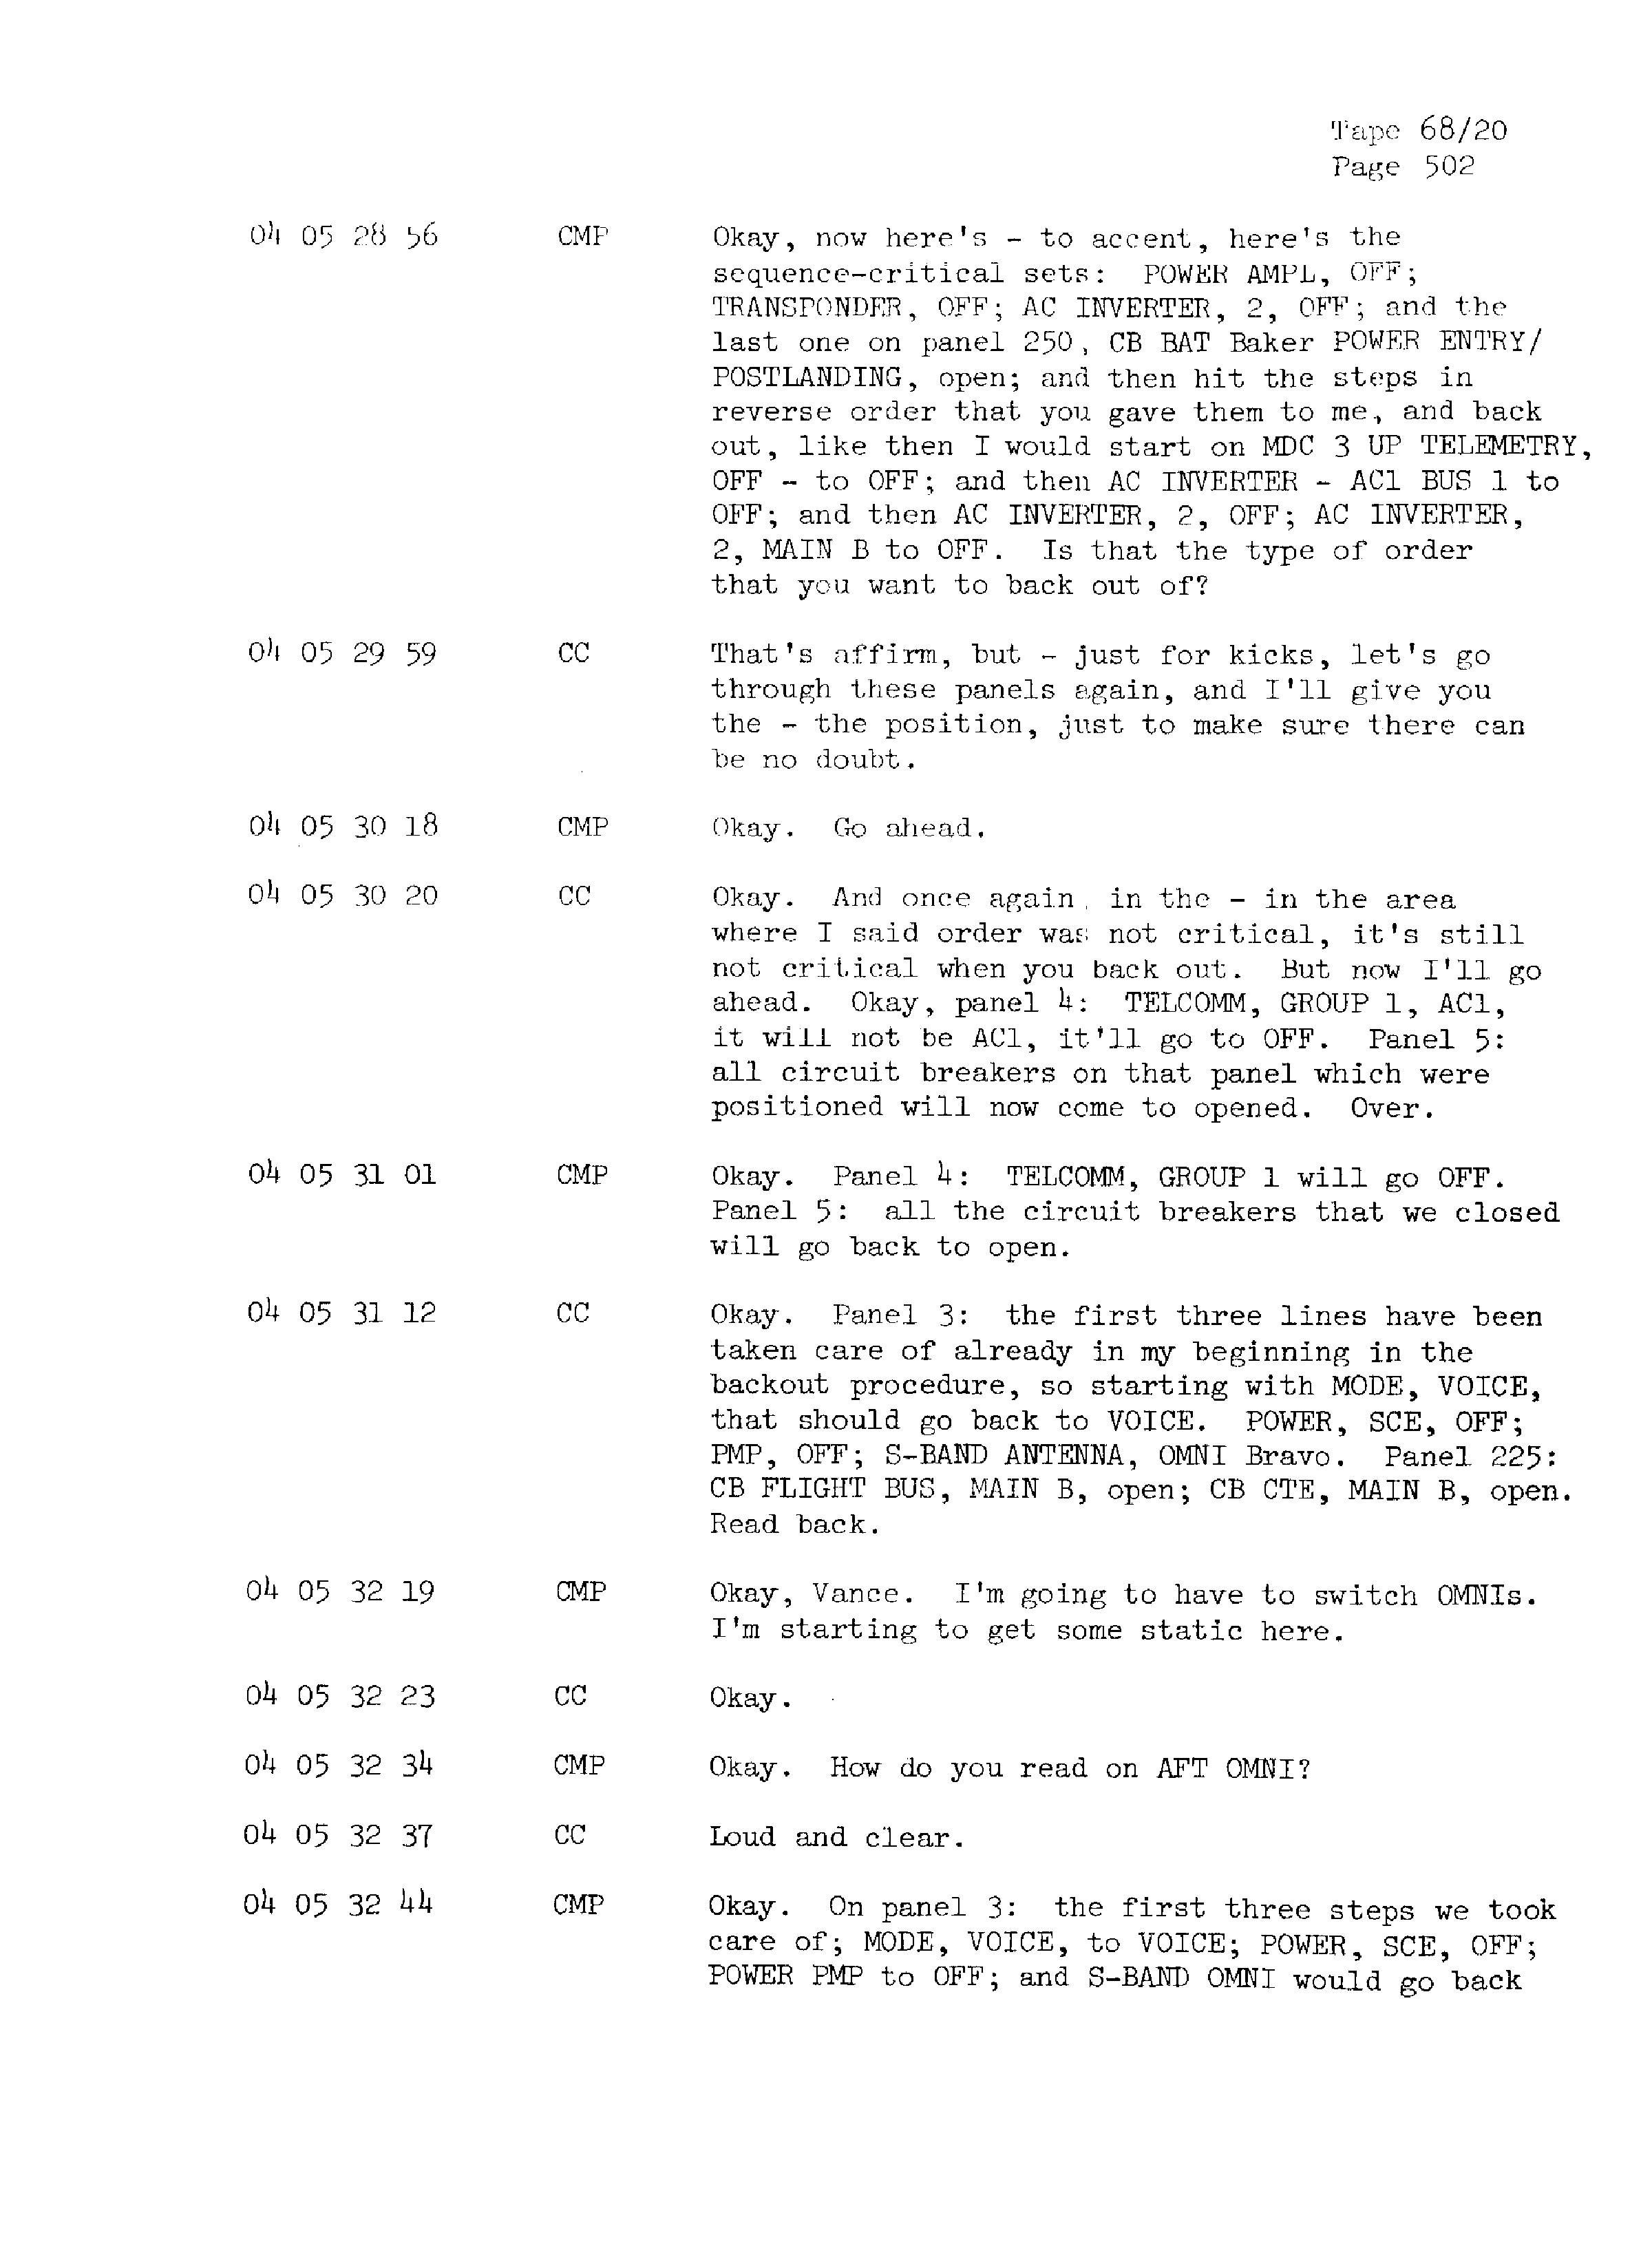 Page 509 of Apollo 13’s original transcript